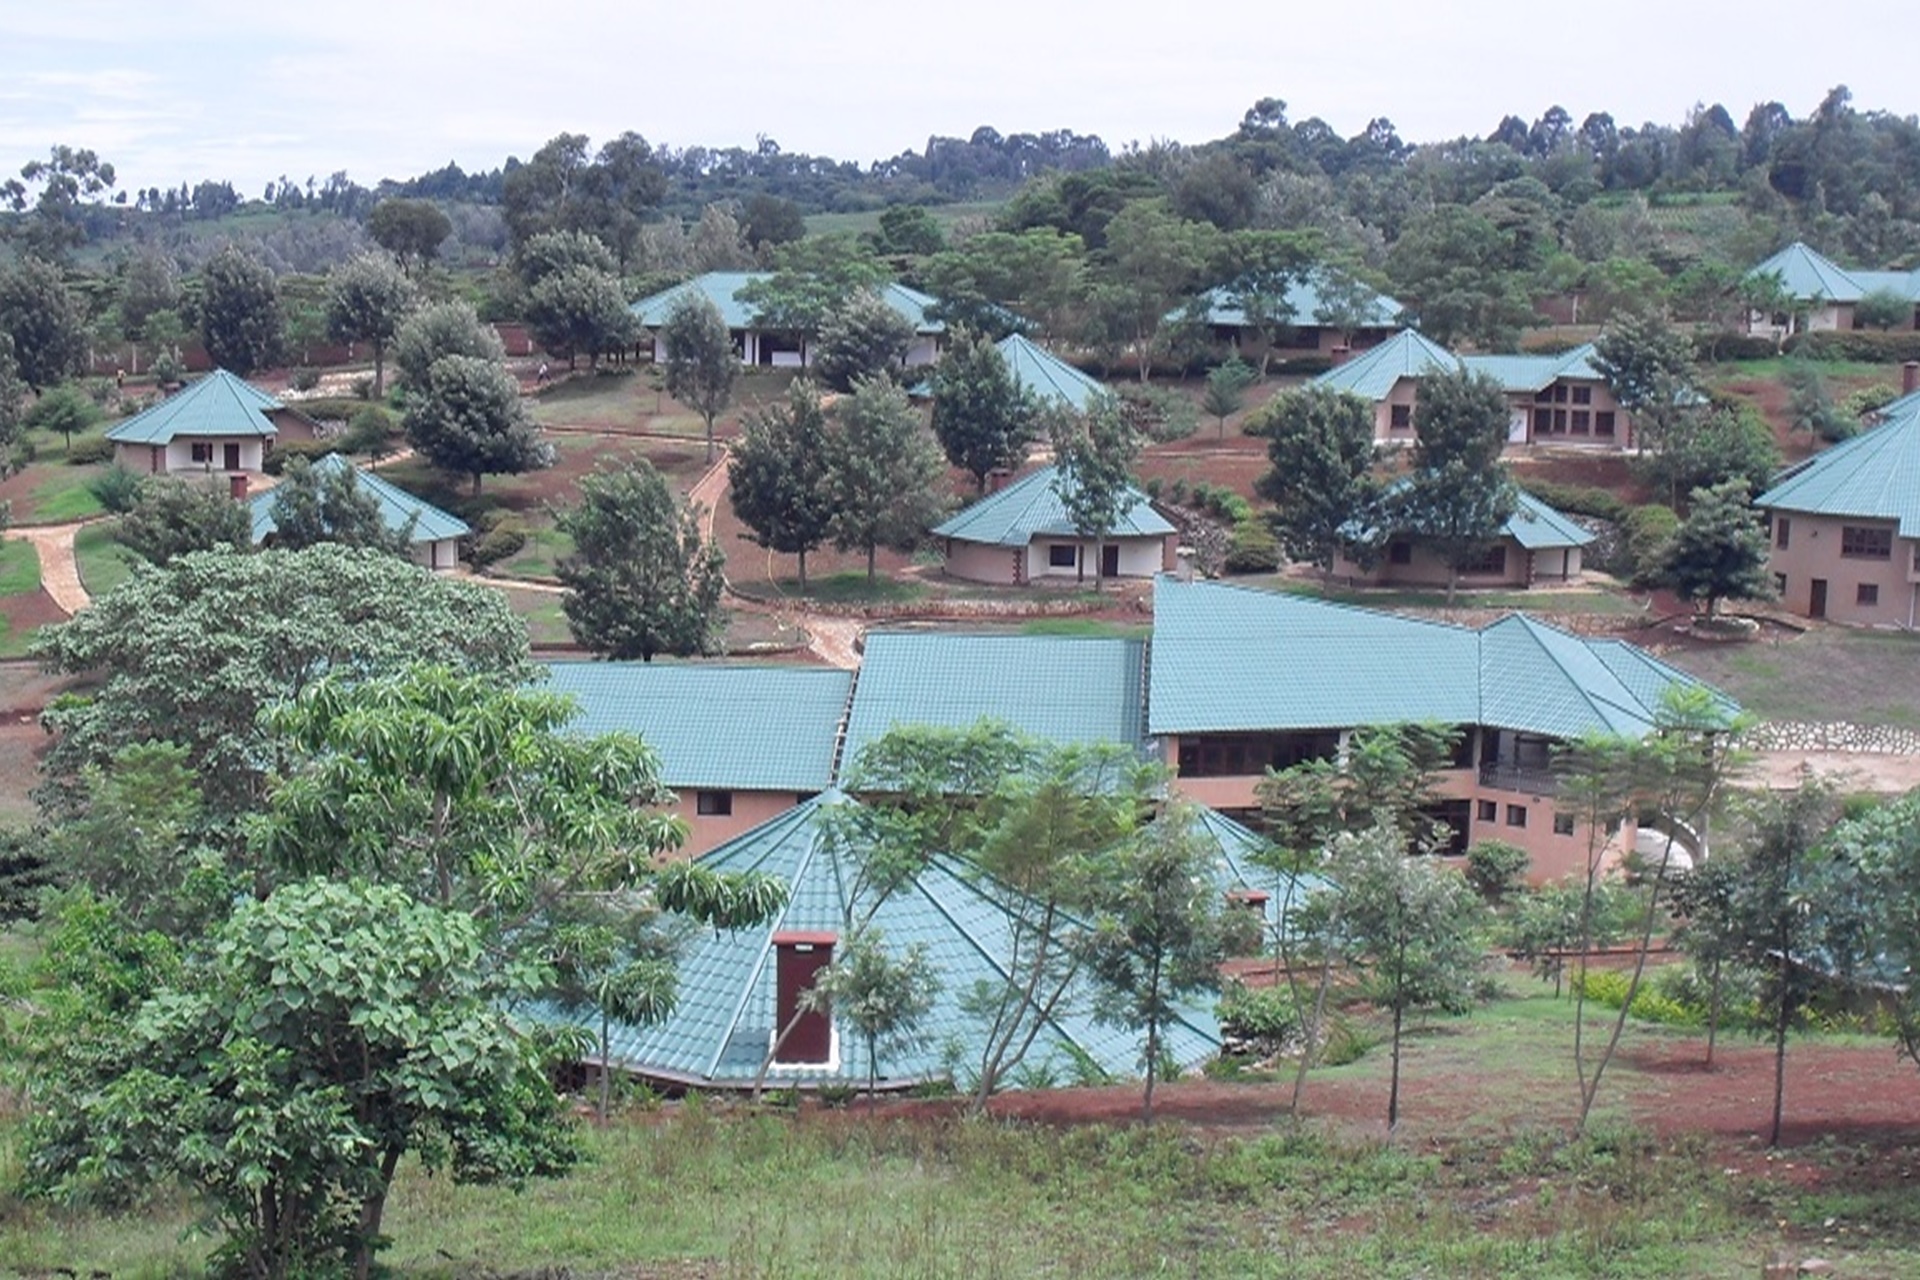  Ganako Luxury Lodge - Accommodation in Ngorongoro National Park